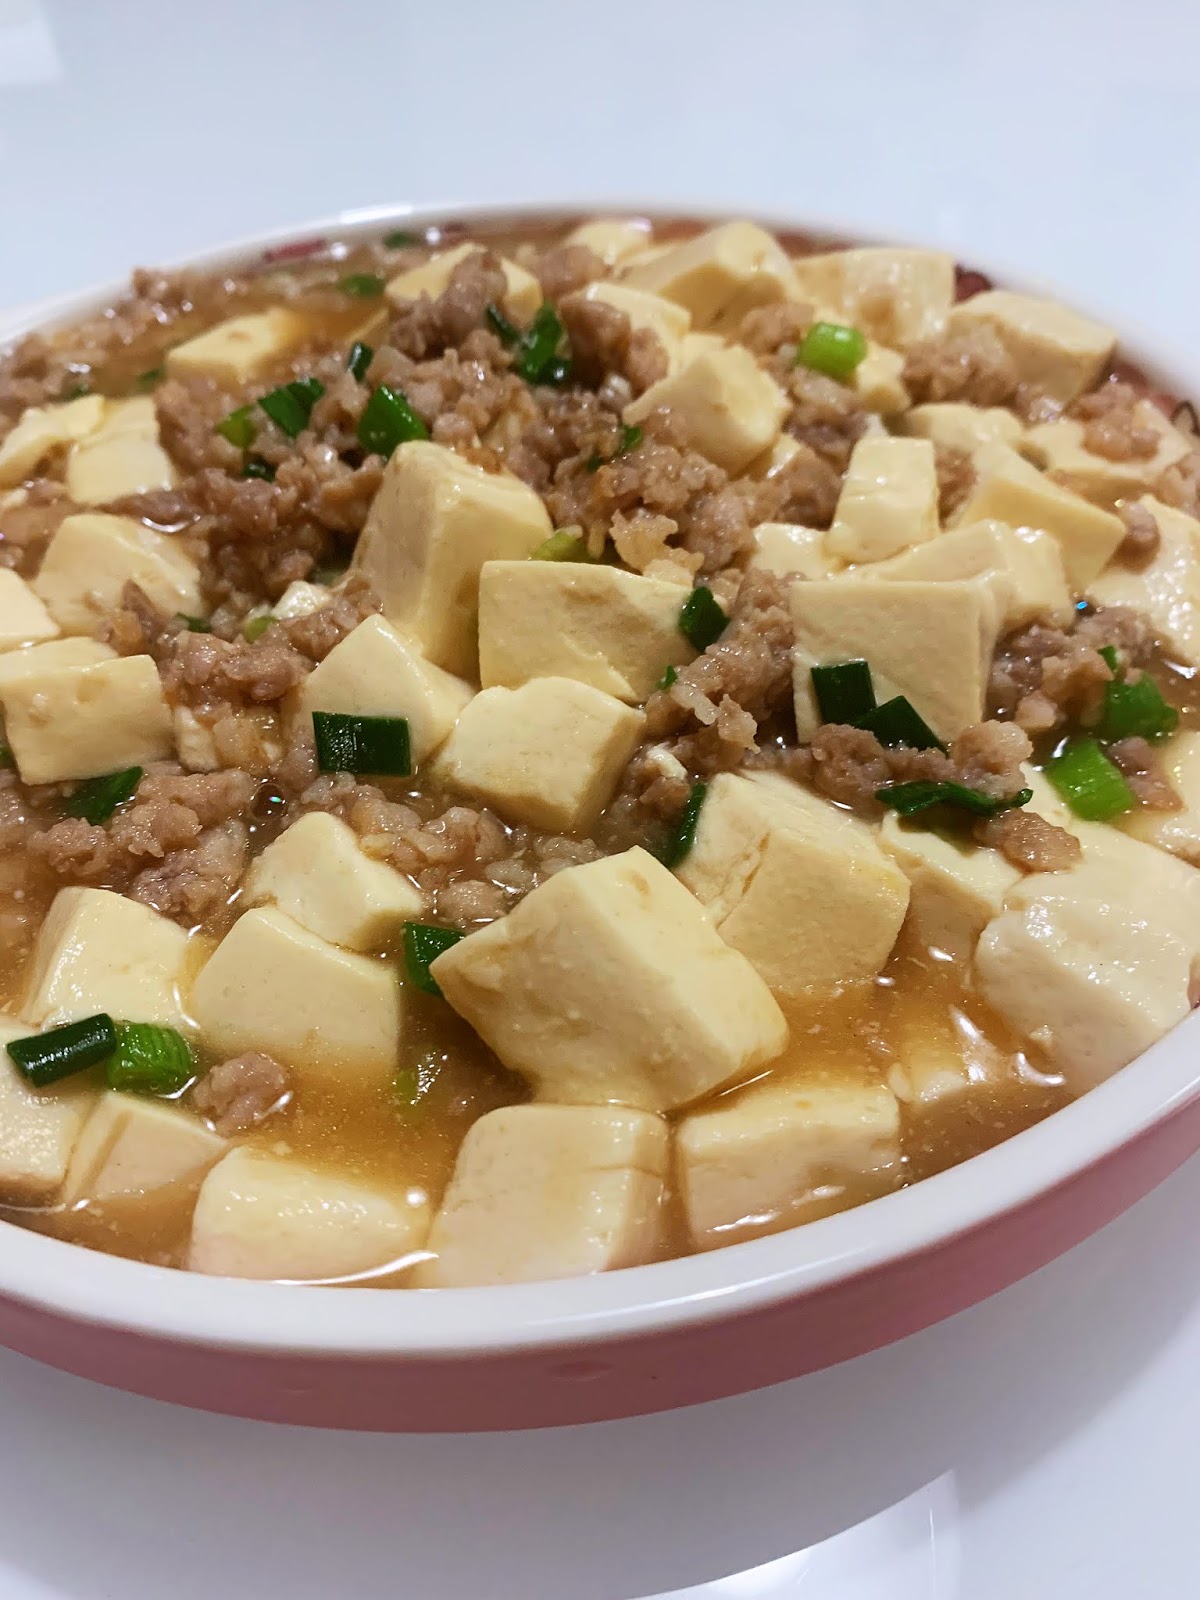 原来炸圆子也不是什么很难的事，纪念第一次炸豆腐圆子 - 美味厨房 - 得意生活-武汉生活消费社区